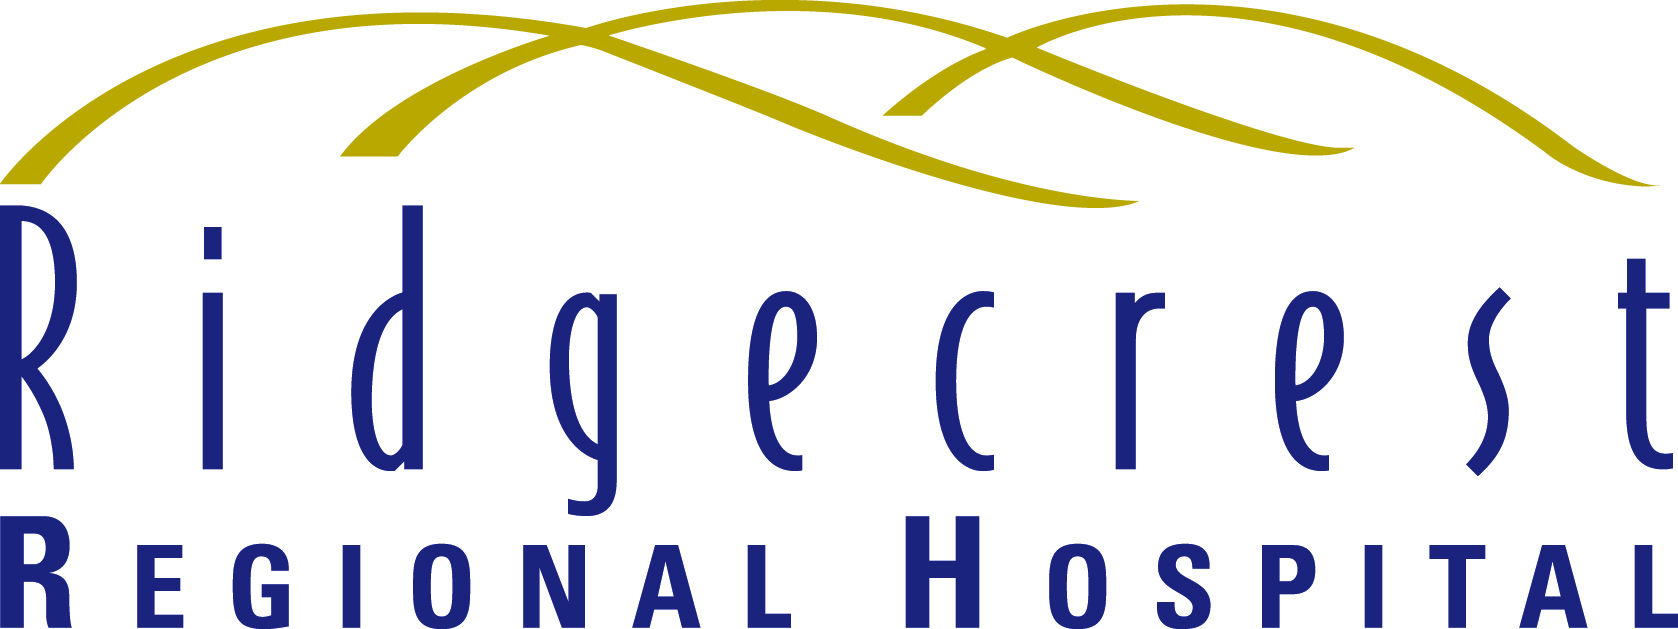 1.Ridgecrest Regional Hospital (Platinum)